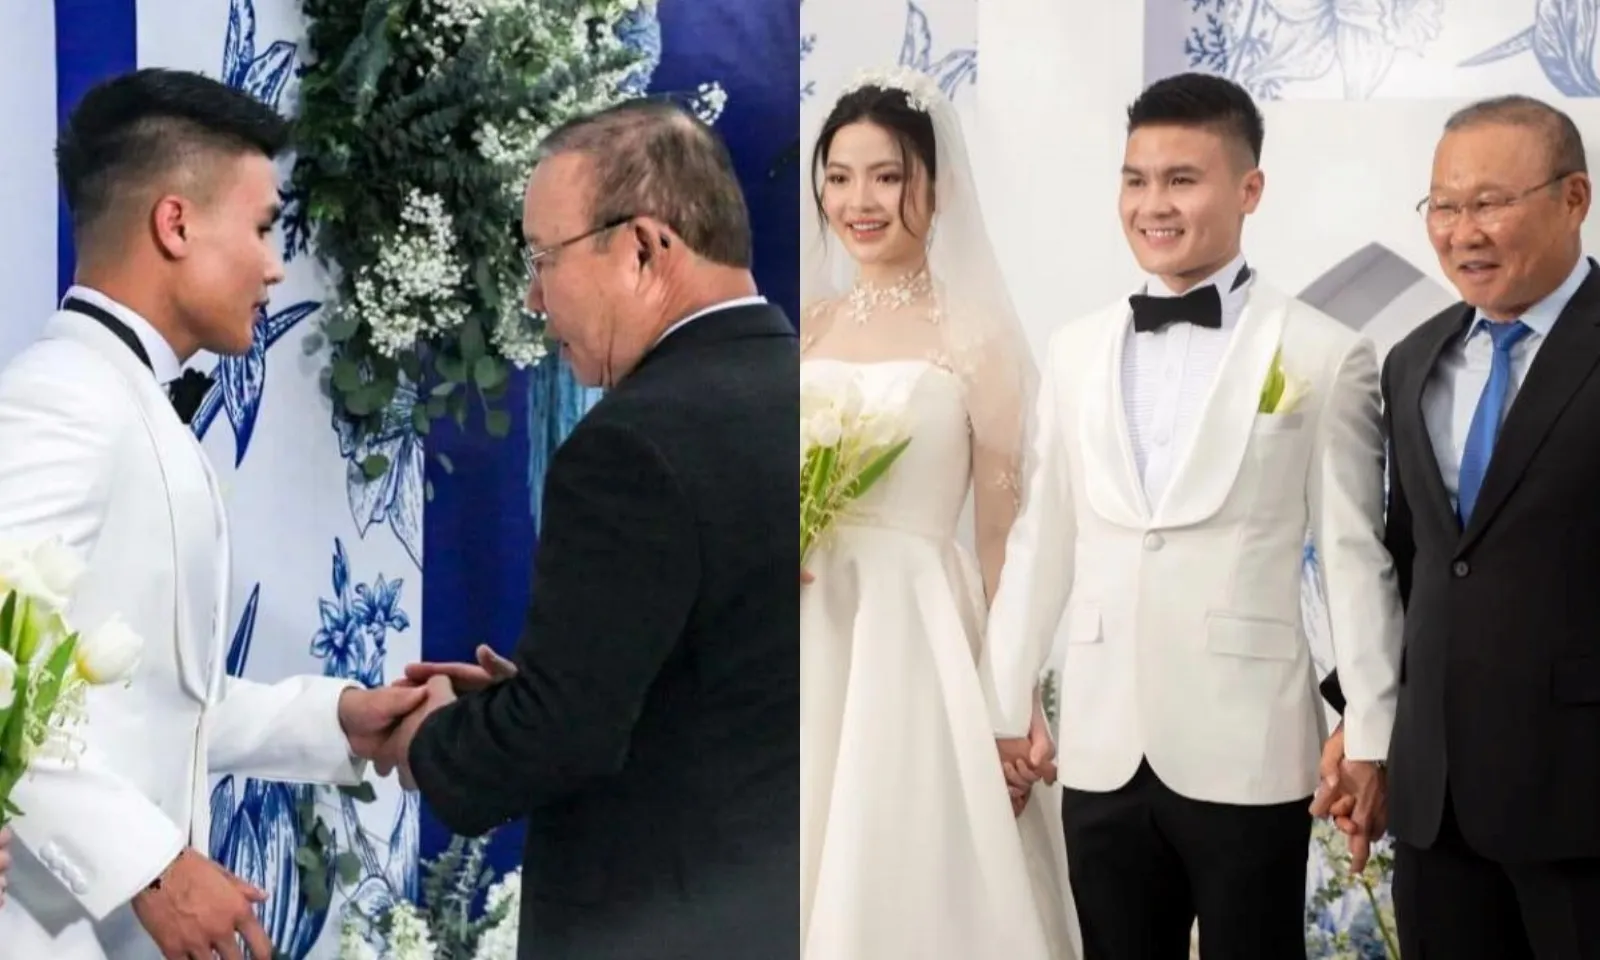 HLV Park Hang-seo đến dự đám cưới Quang Hải, trìu mến bắt tay cô dâu